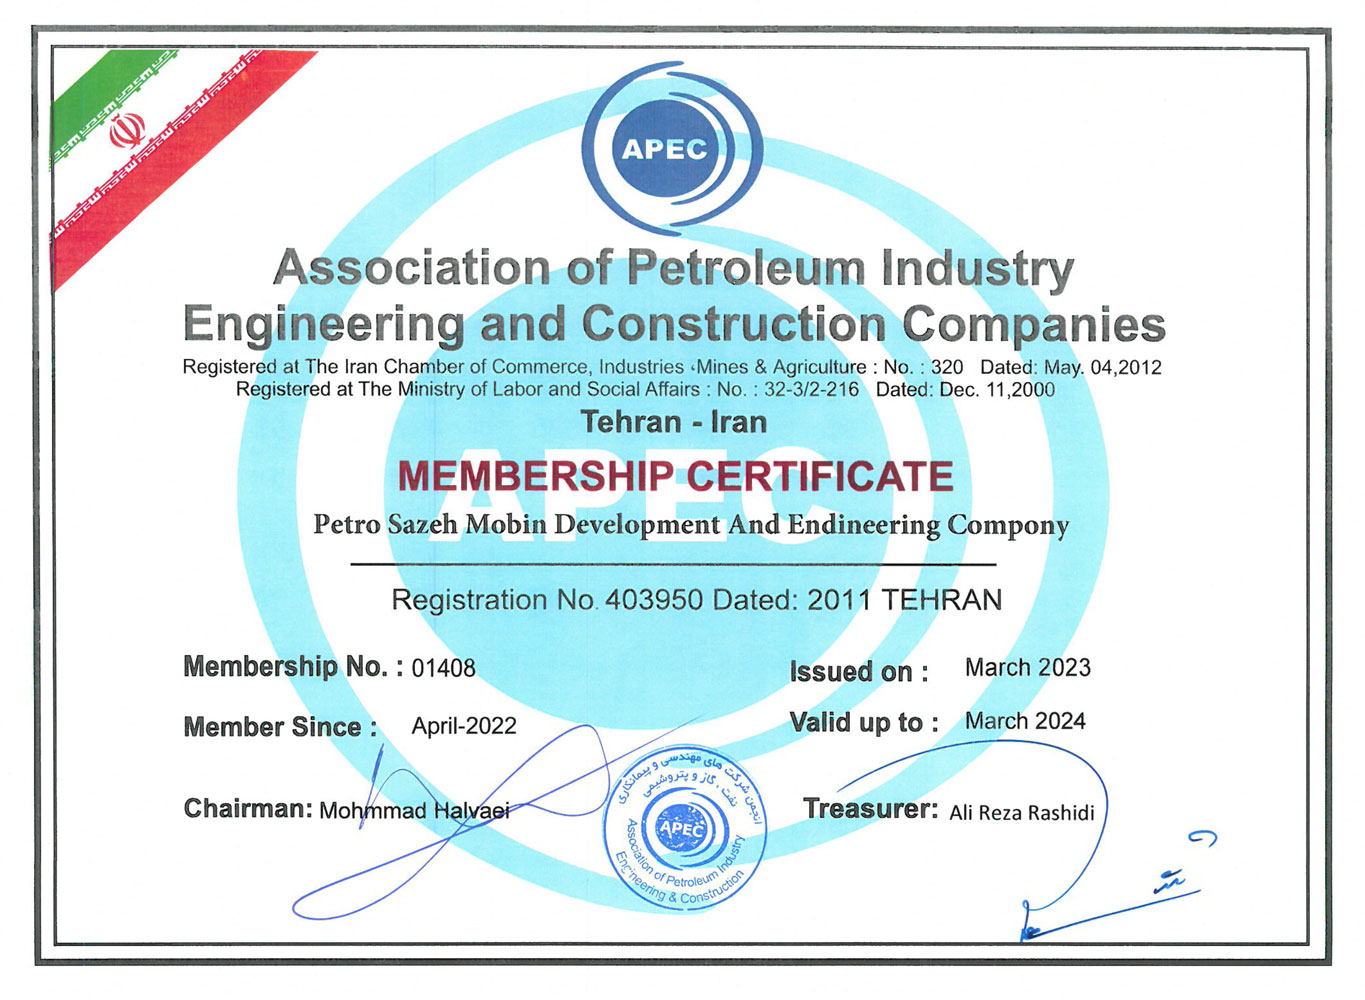 انجمن صنفی شرکت های مهندسی و پیمانکاری نفت، گاز و پتروشیمی (APEC)